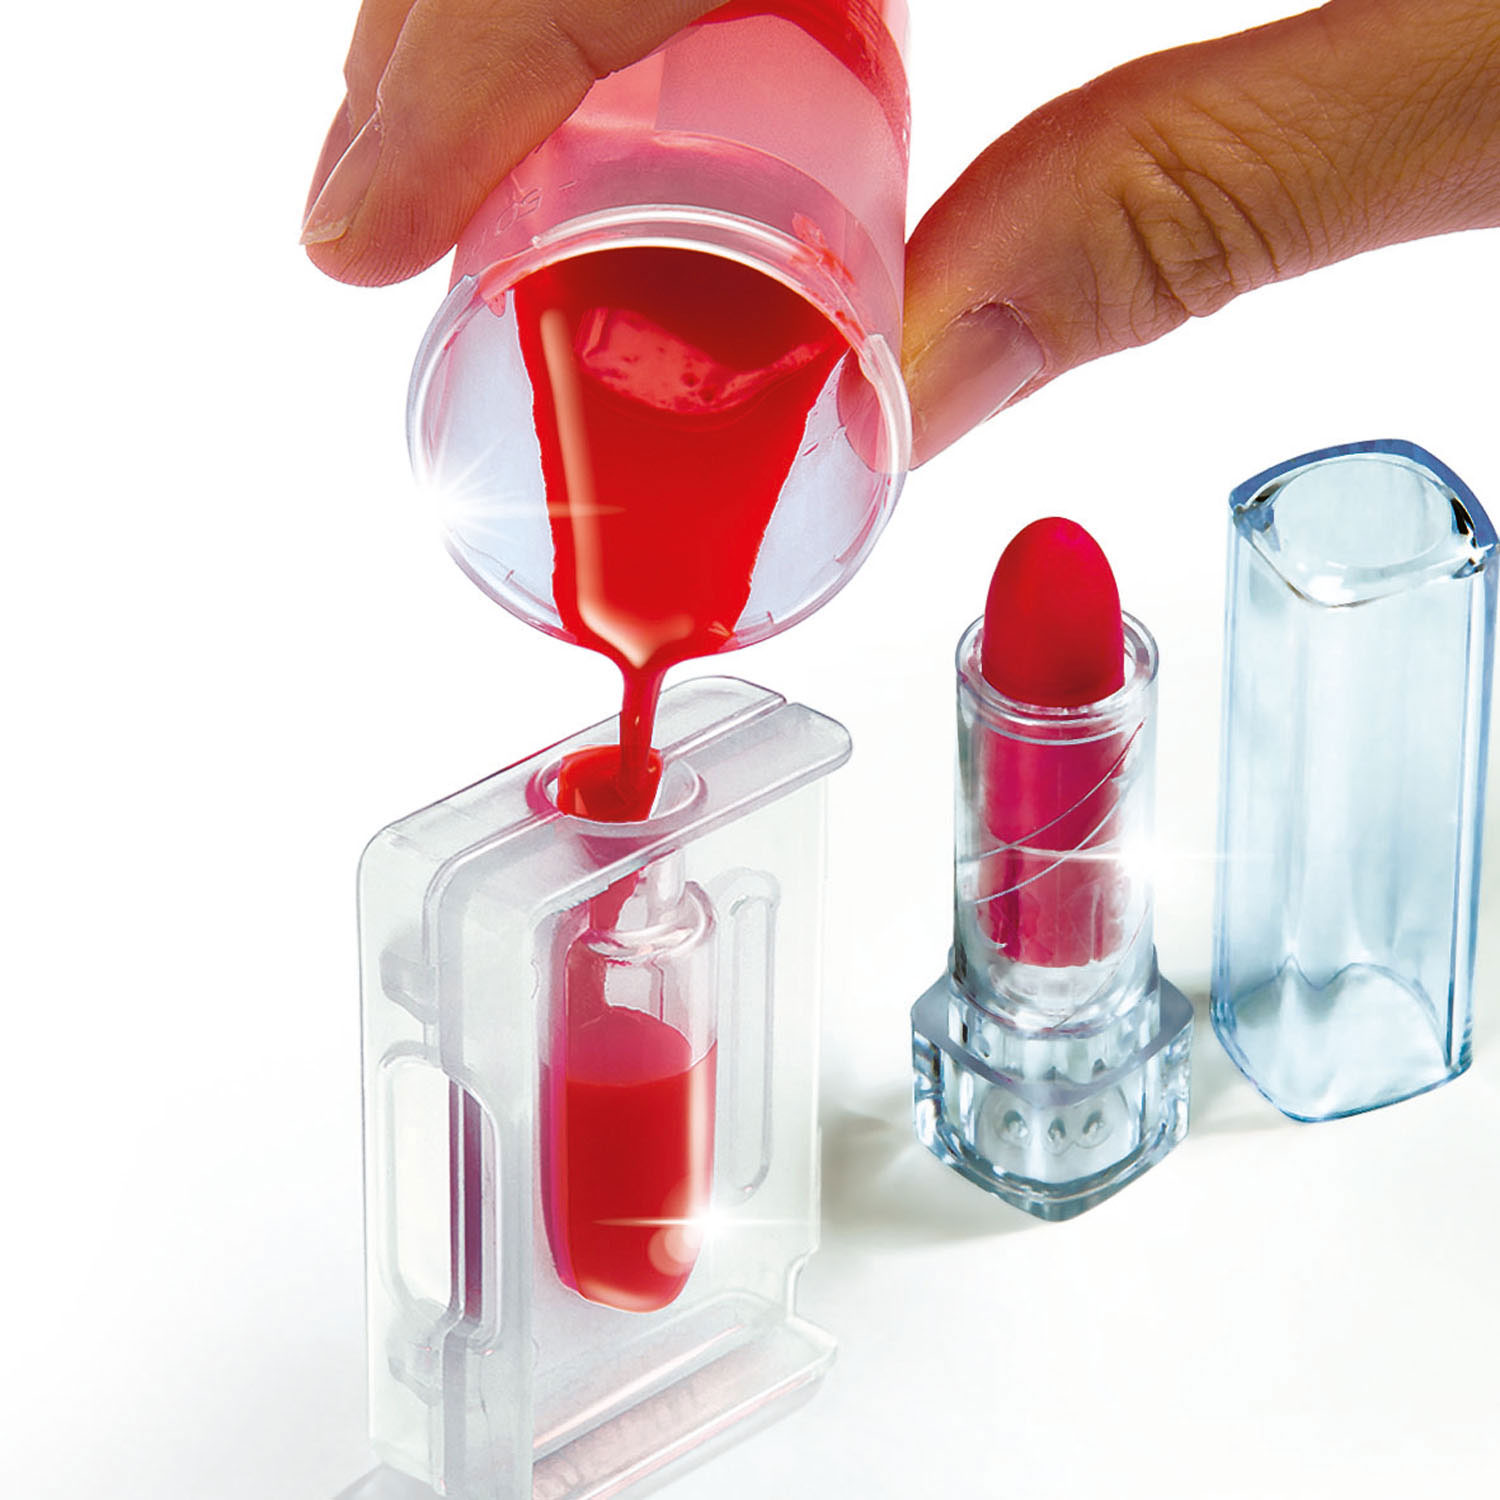 Clementoni Science & Games – Machen Sie Ihren eigenen Lippenstift